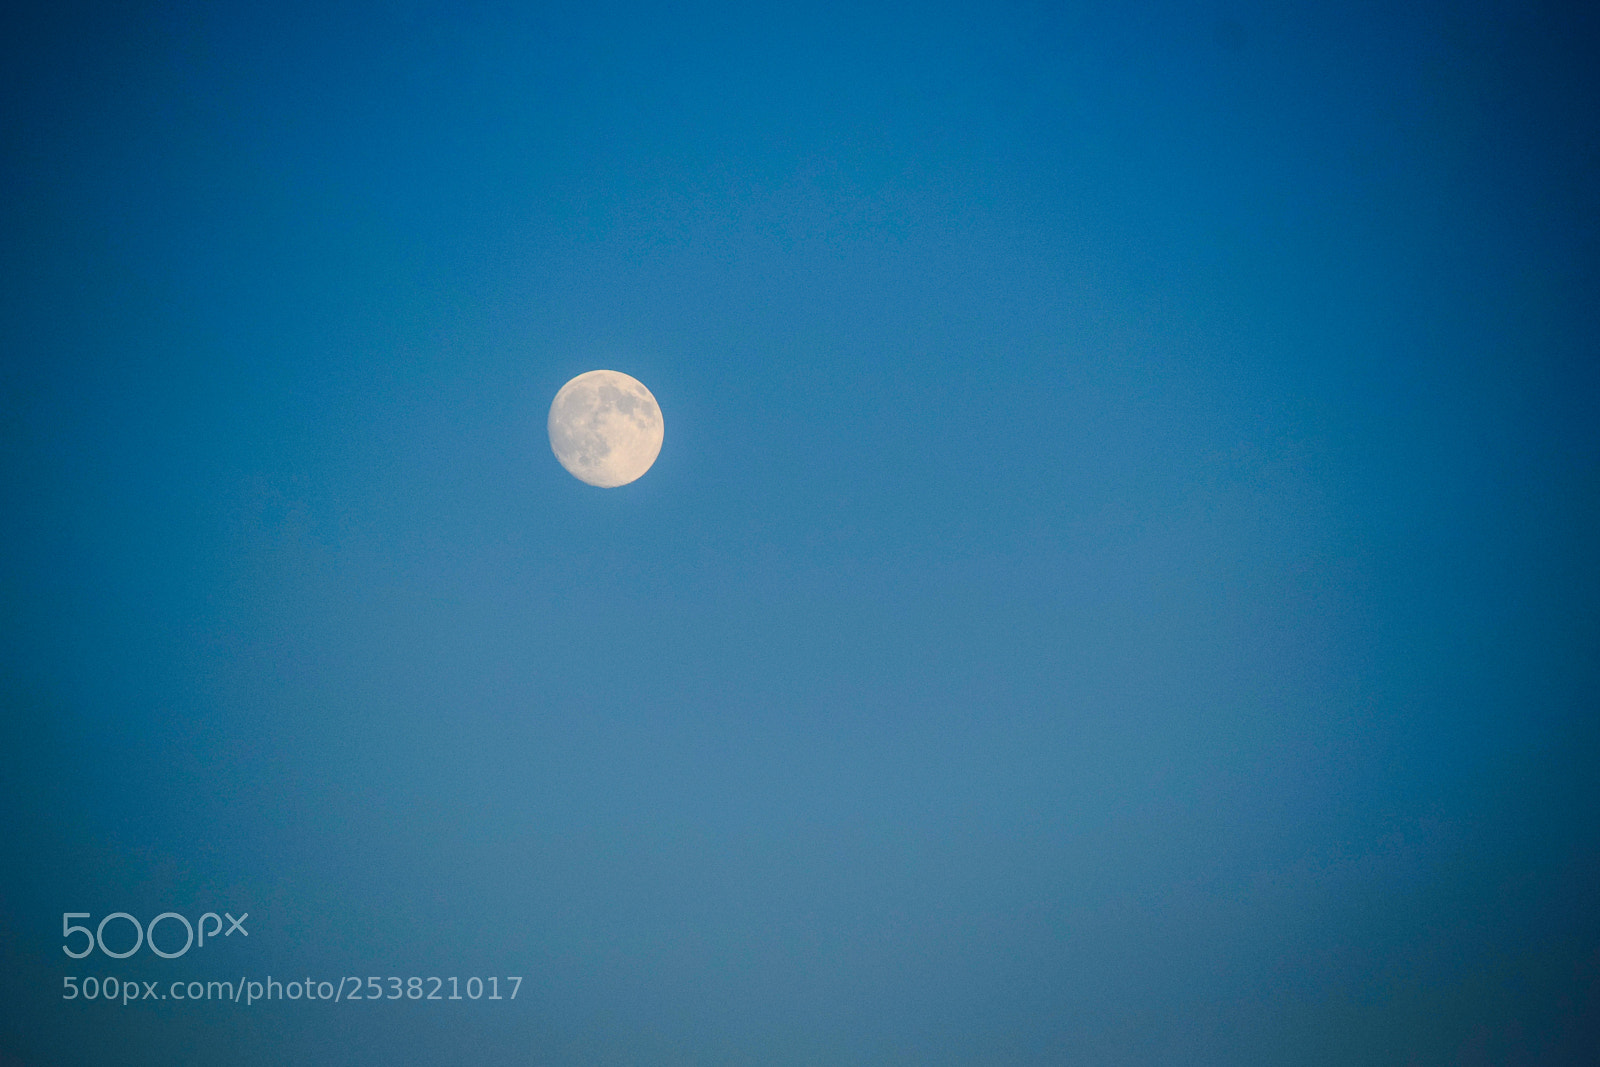 Nikon D3300 sample photo. Moon at day photography